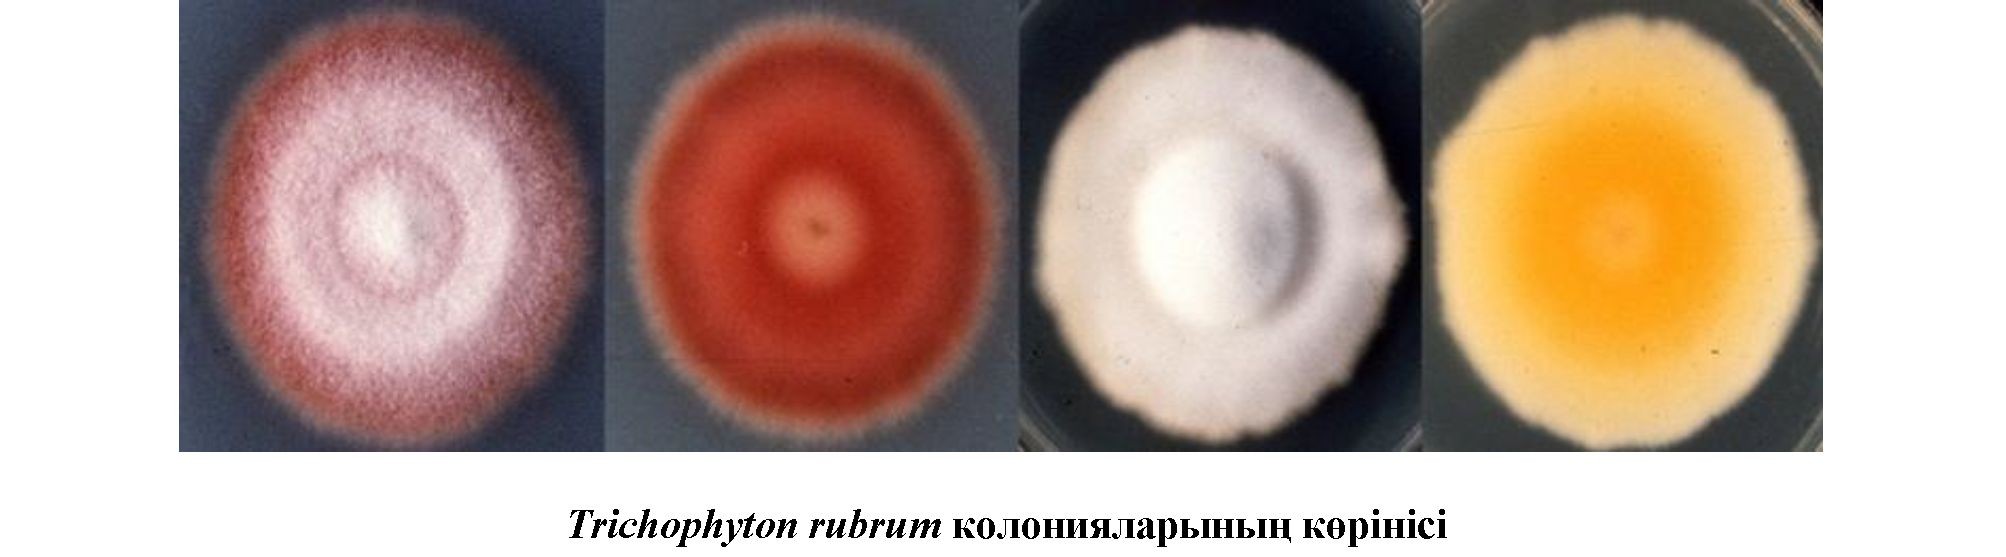 Trichophyton rubrum саңырауқұлақтарының морфо-физиологиялық ерекшеліктері